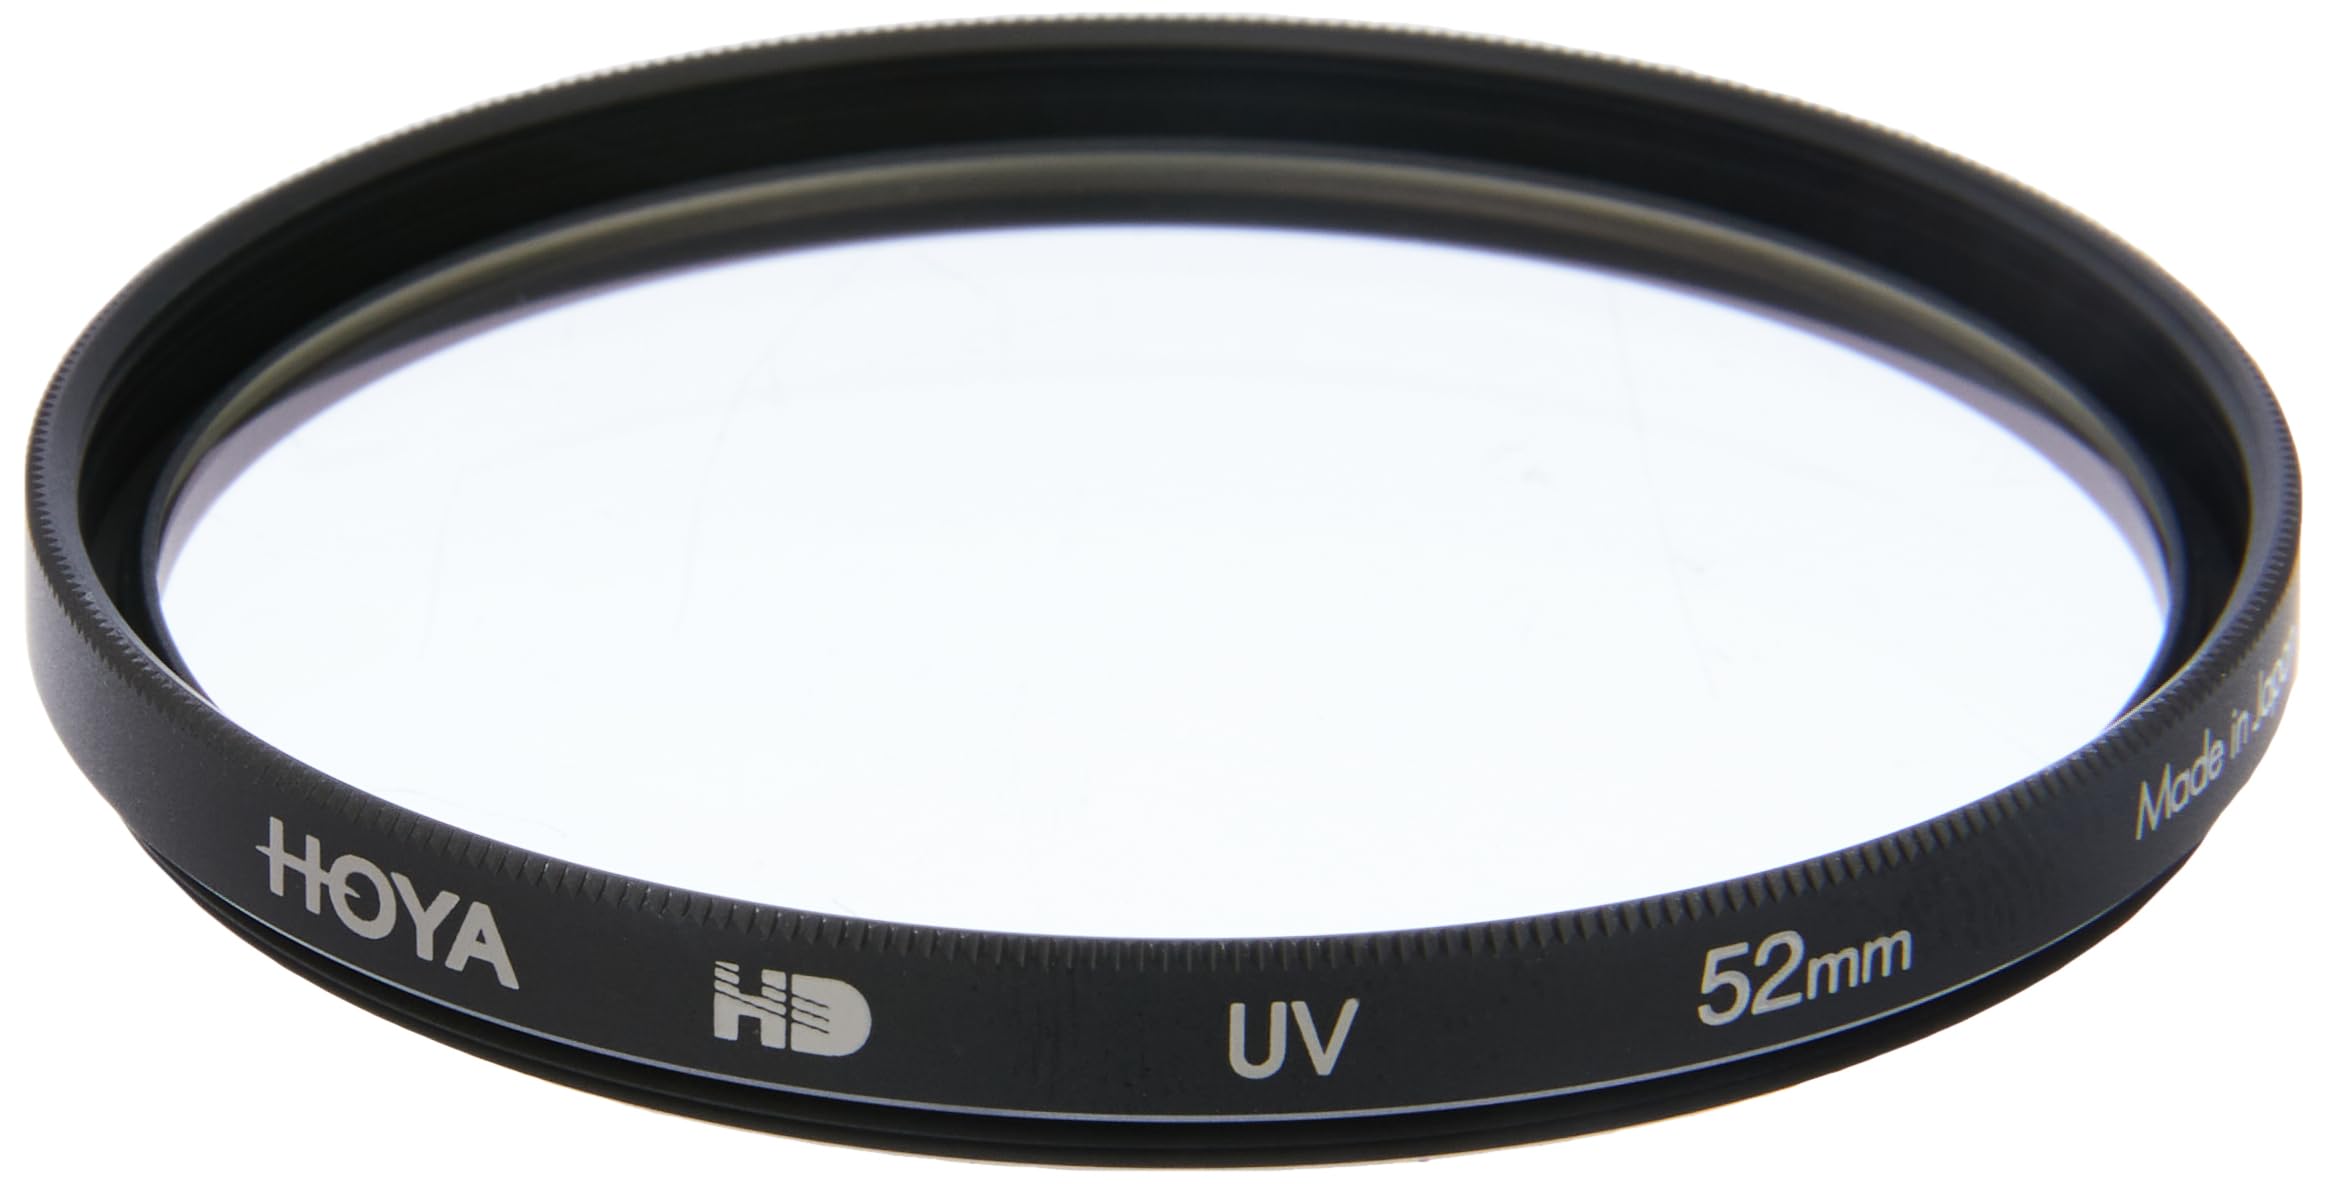 Hoya HD UV Filter 52mm